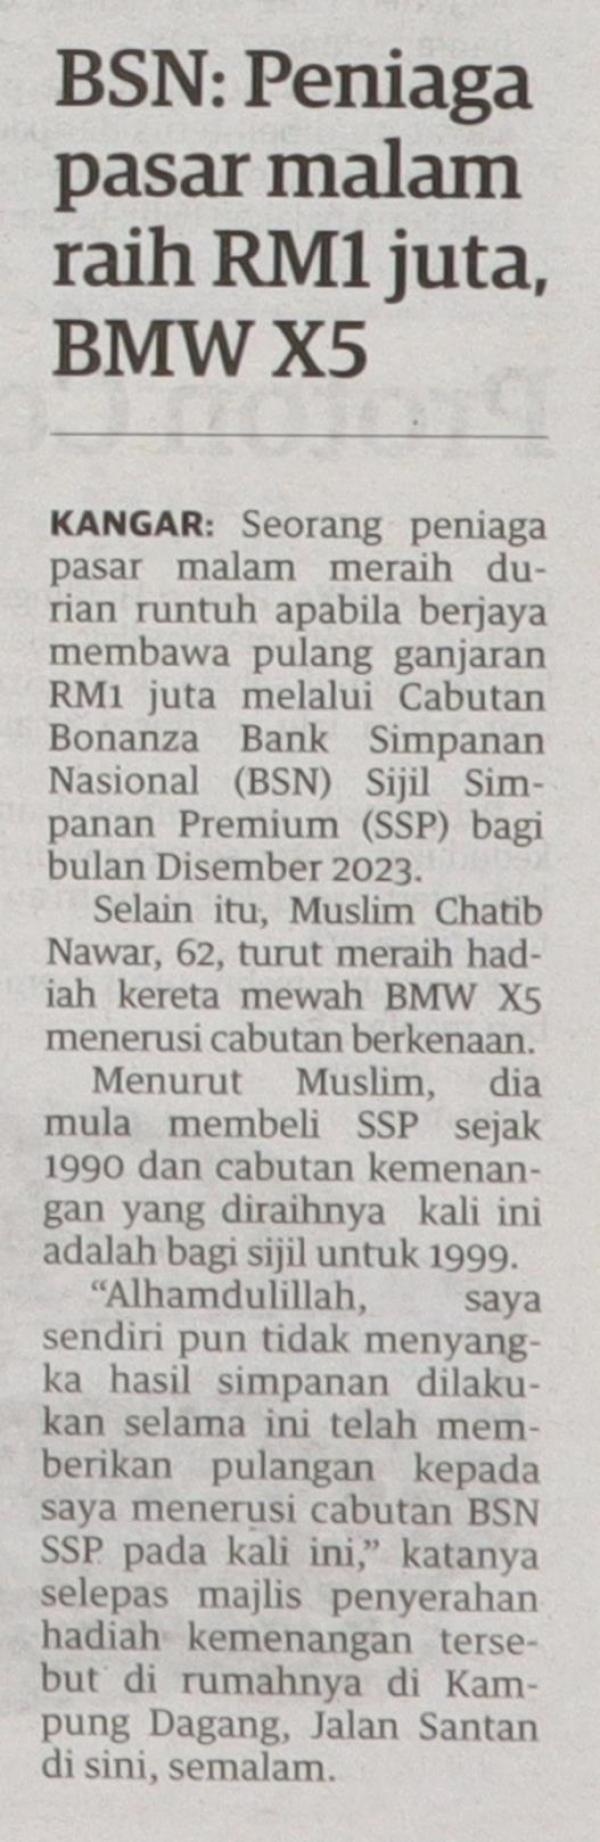 BSN: Peniaga pasar malam raih RM1 juta, BMW X5